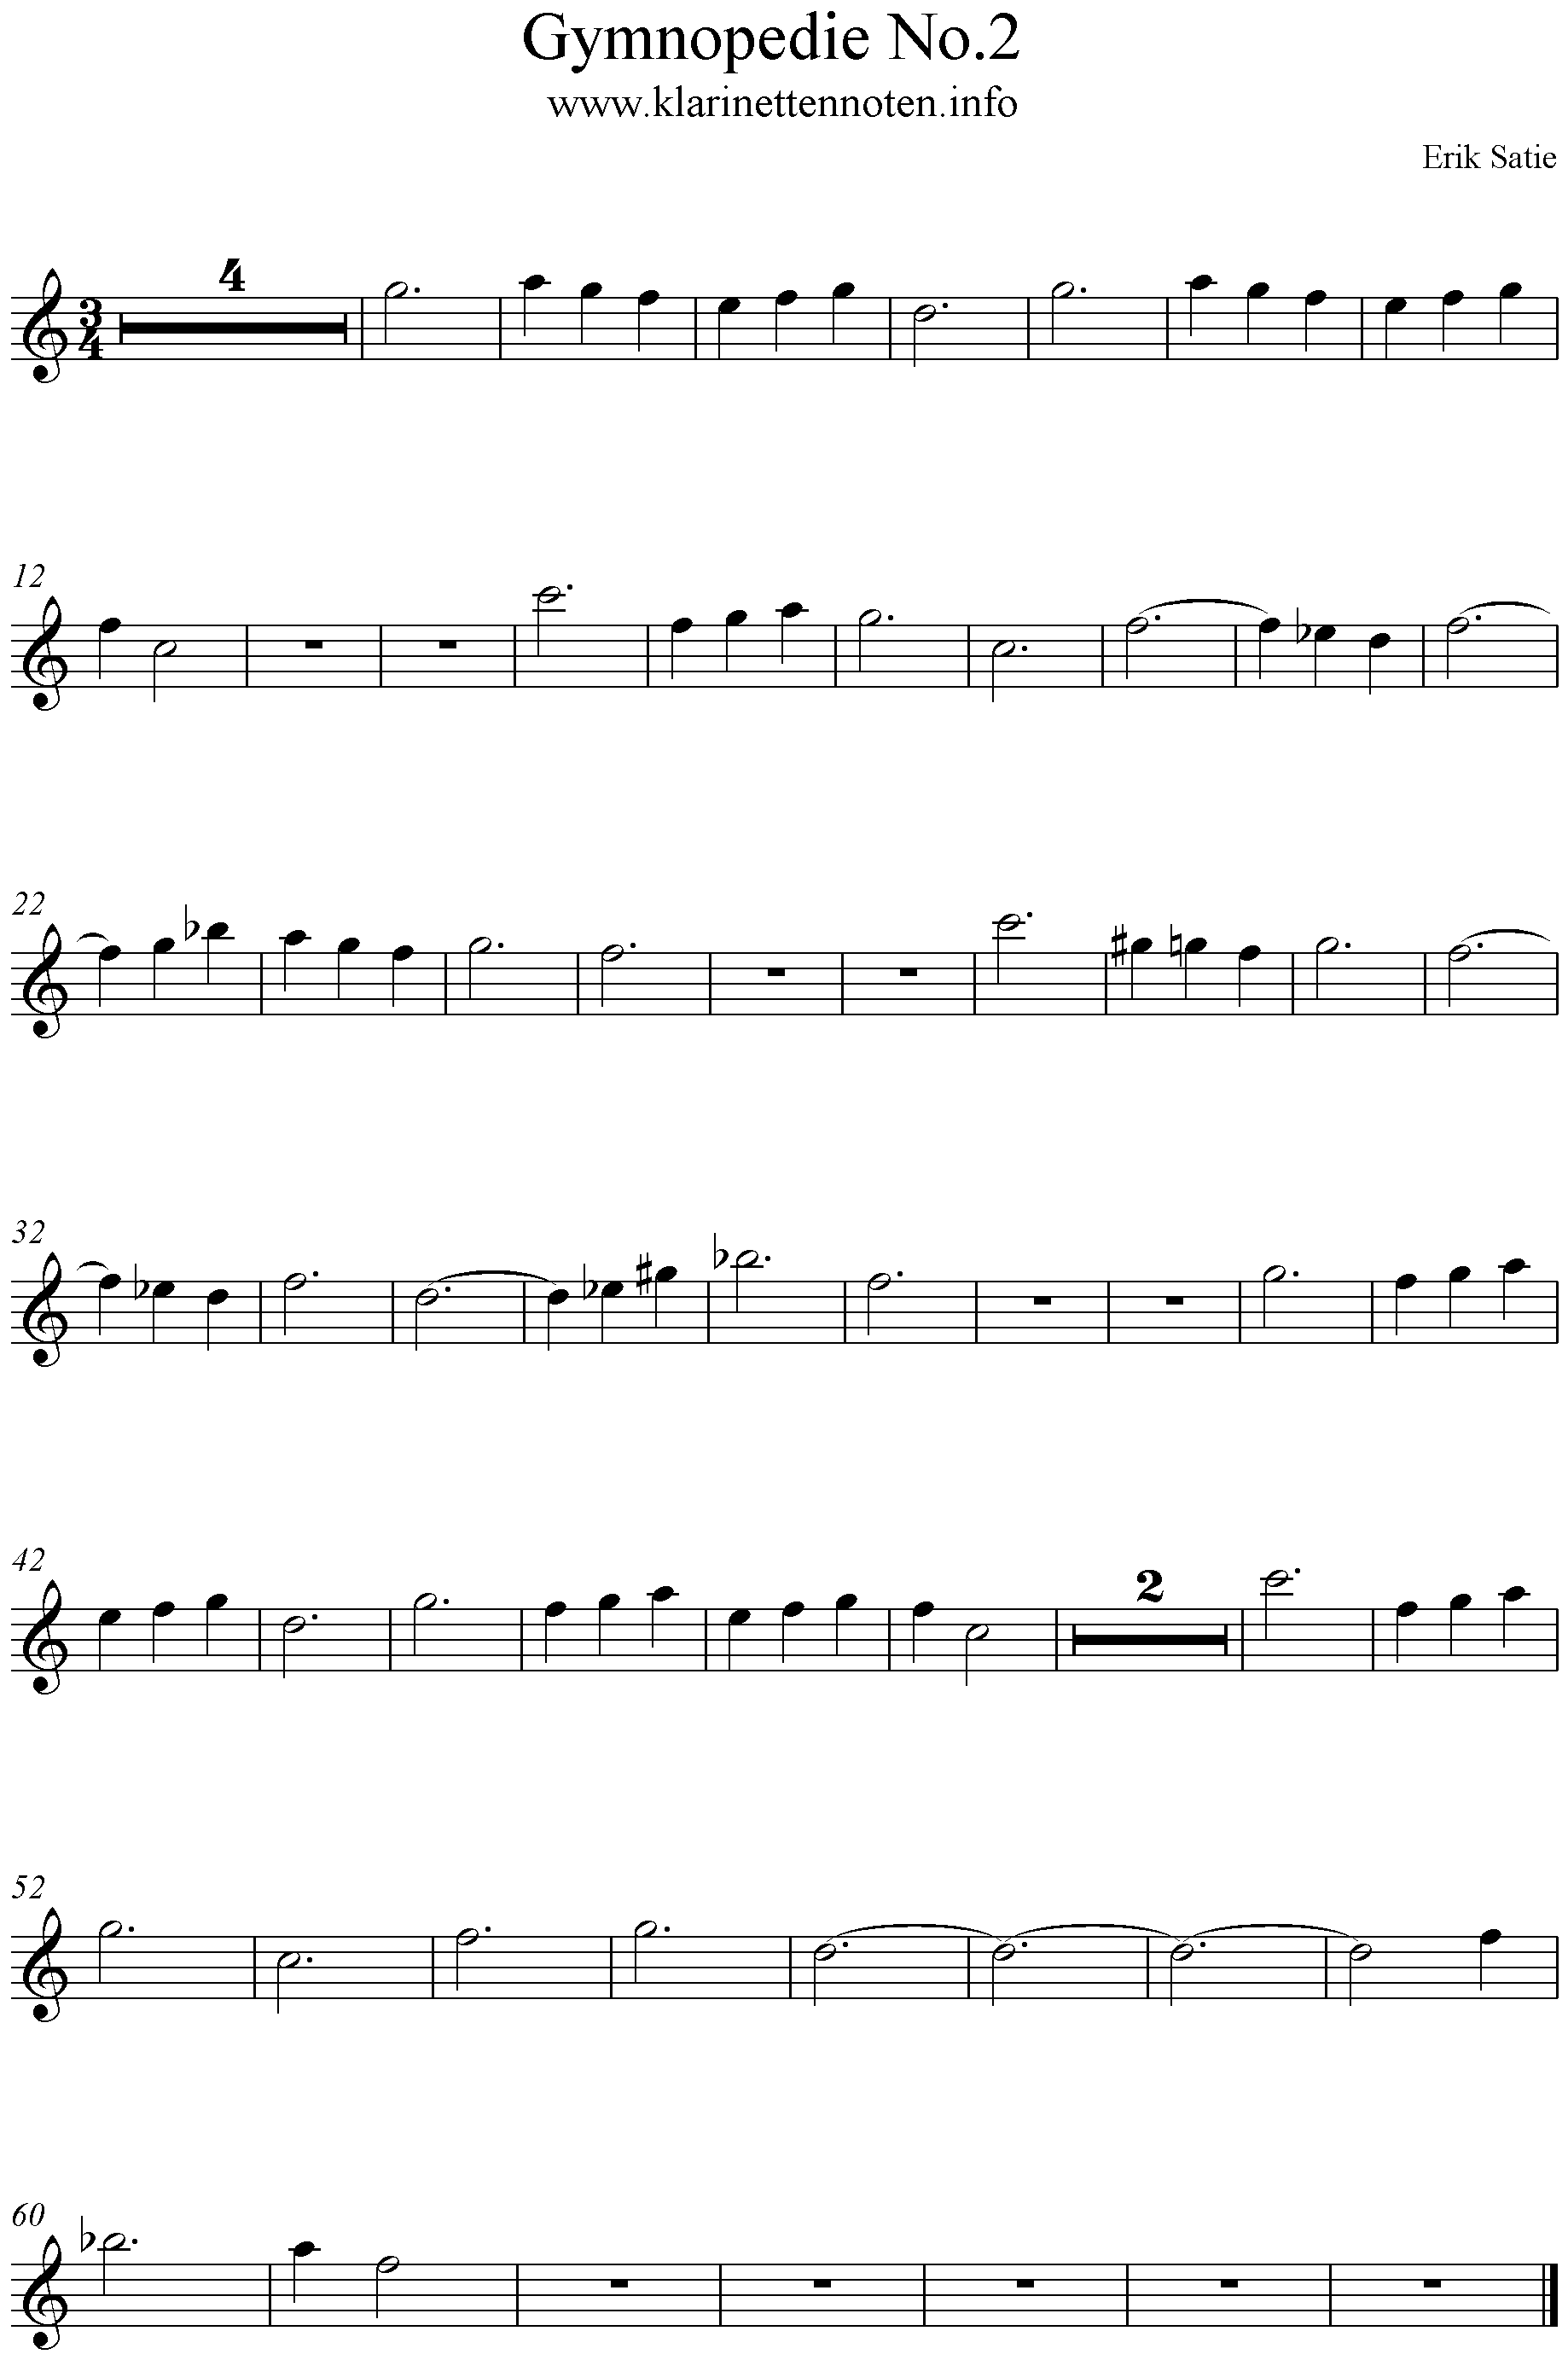 Noten Gymnopedie No2, Satie, Geige, Oboe, Querflöte